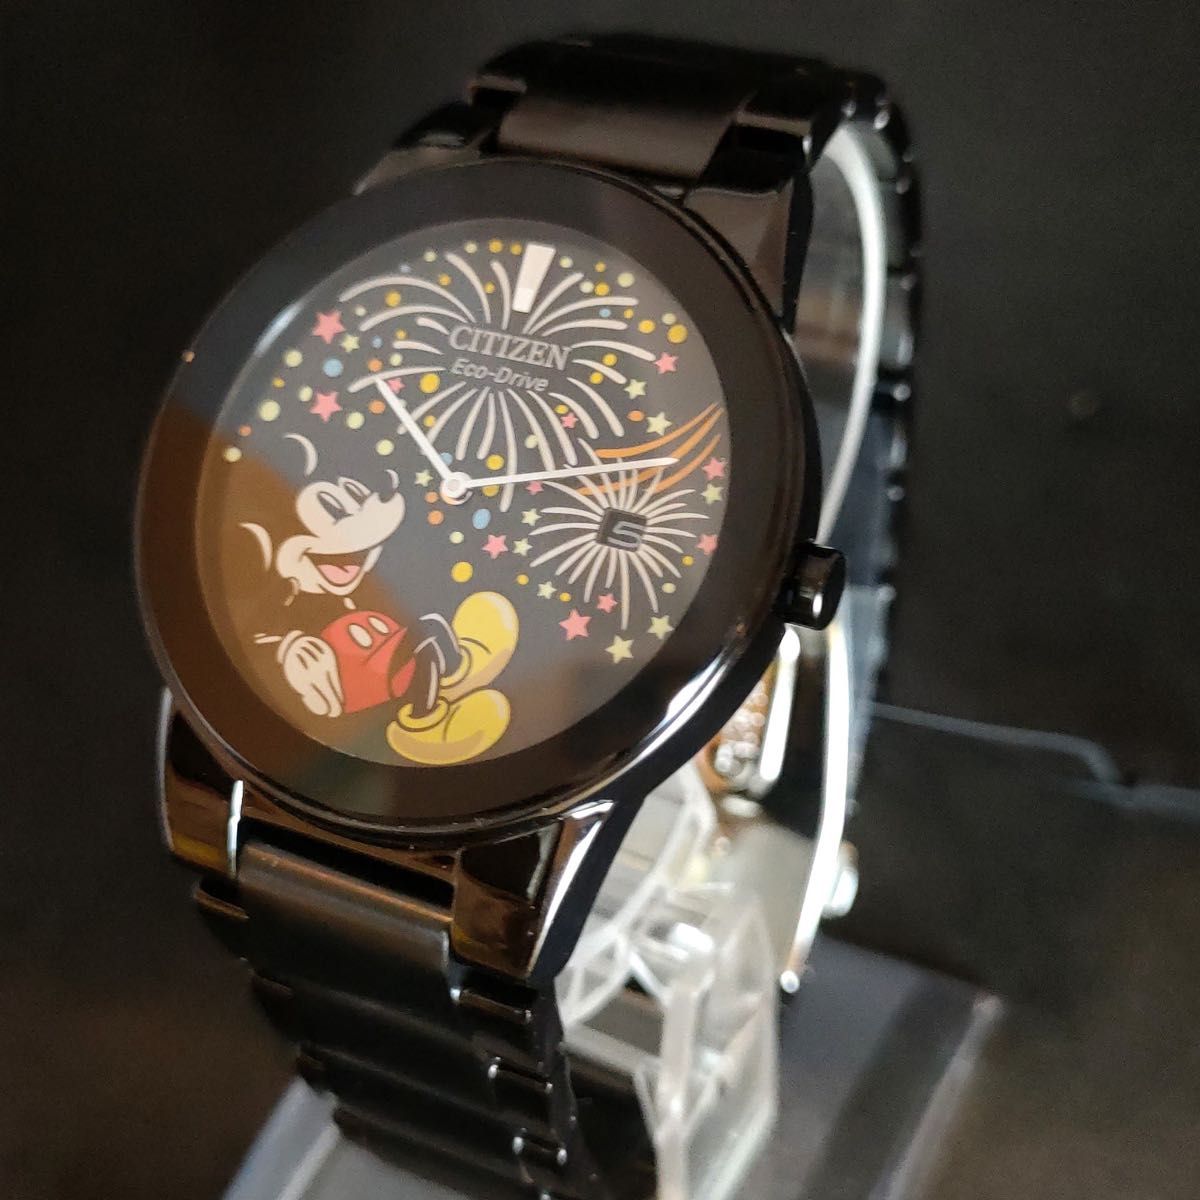 【Disney】展示品特価/CITIZEN/シチズン/メンズ レディース腕時計/プレゼント/ミッキーマウス/ディズニー/男性 女性